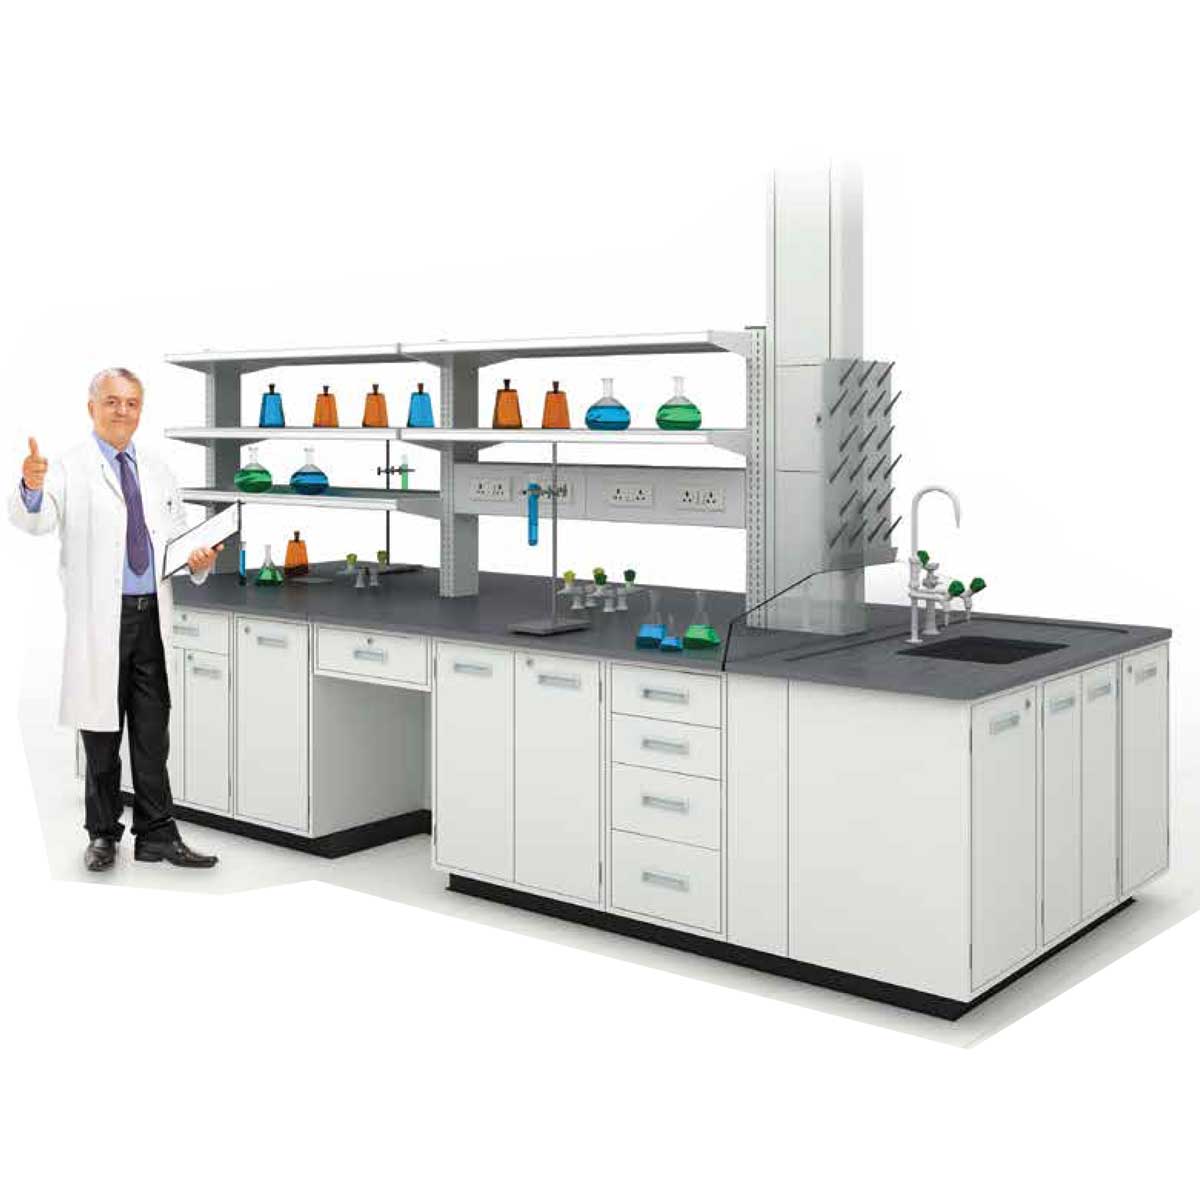 Laboratory Desks Manufacturers, Suppliers in G T B Nagar